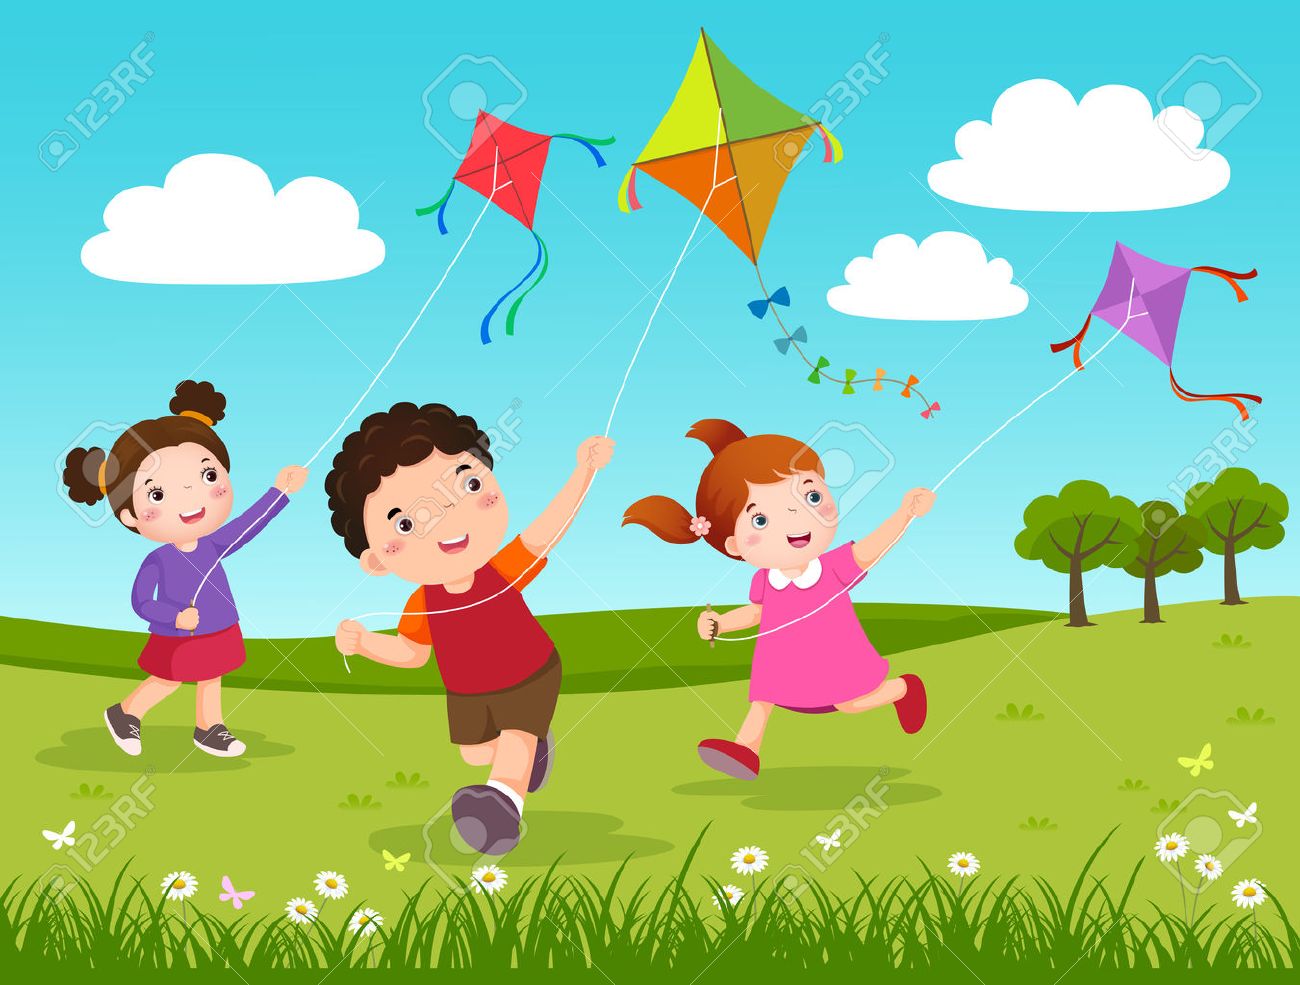 Kids flying kites clipart